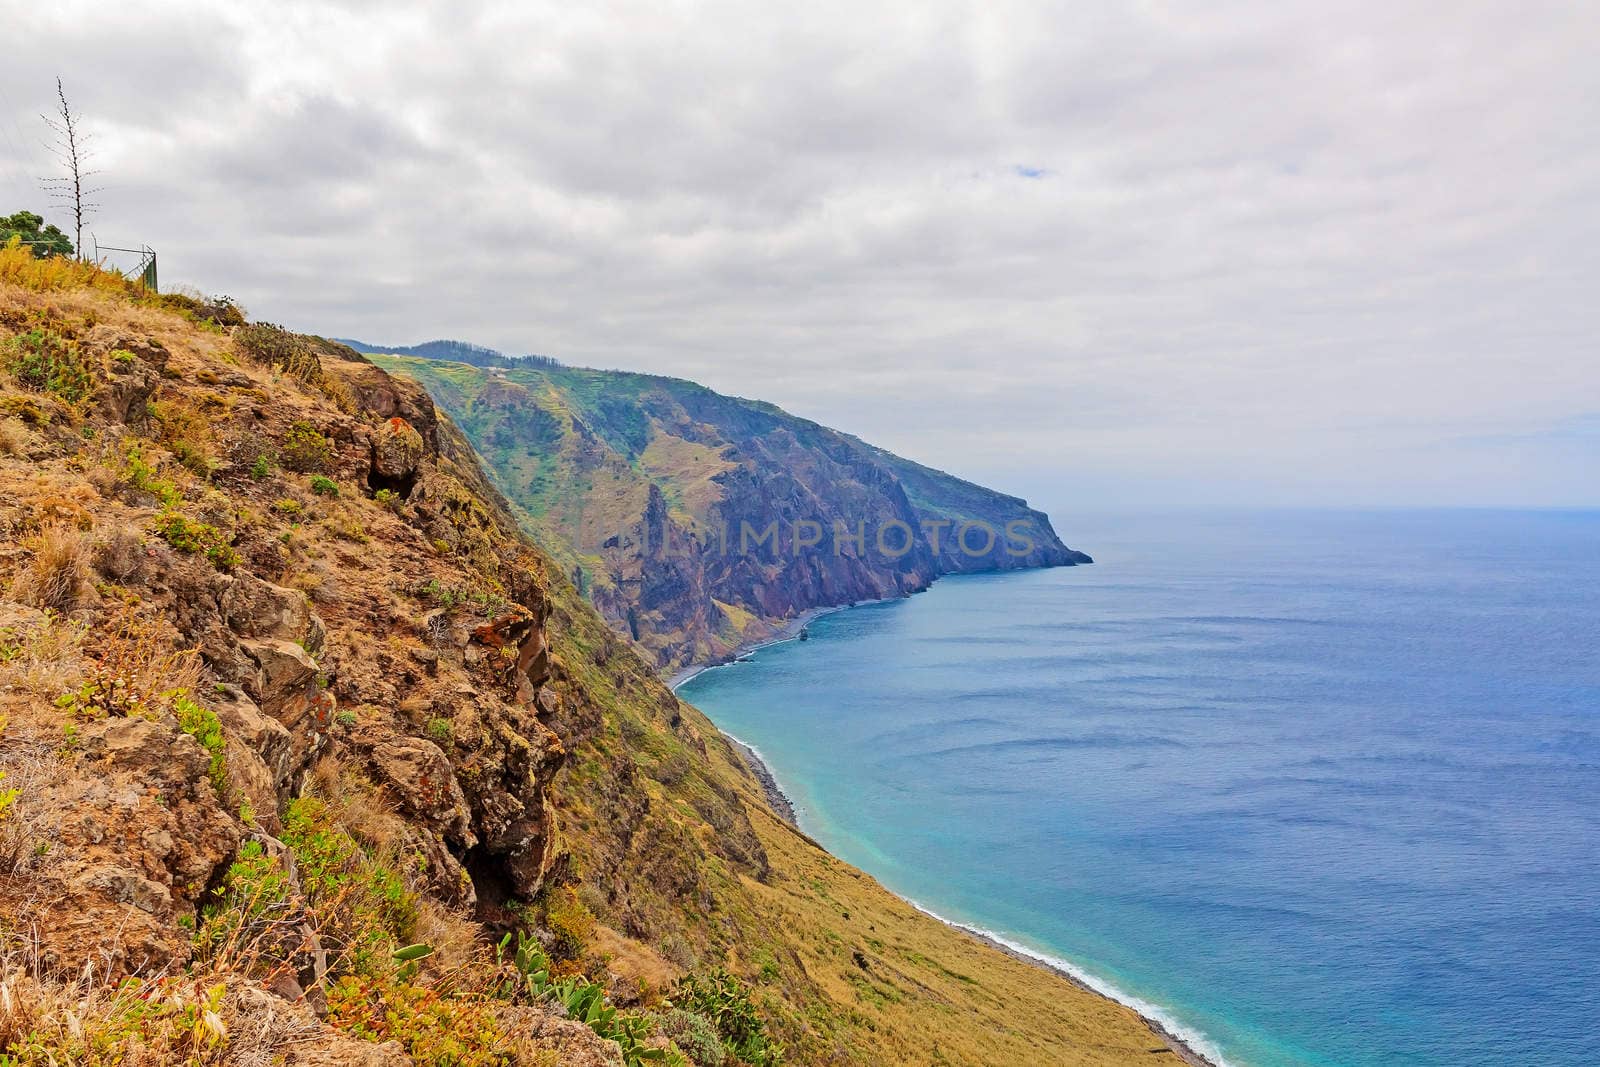 Madeiras westermost point - Ponta do Pargo - colorful cliff coast